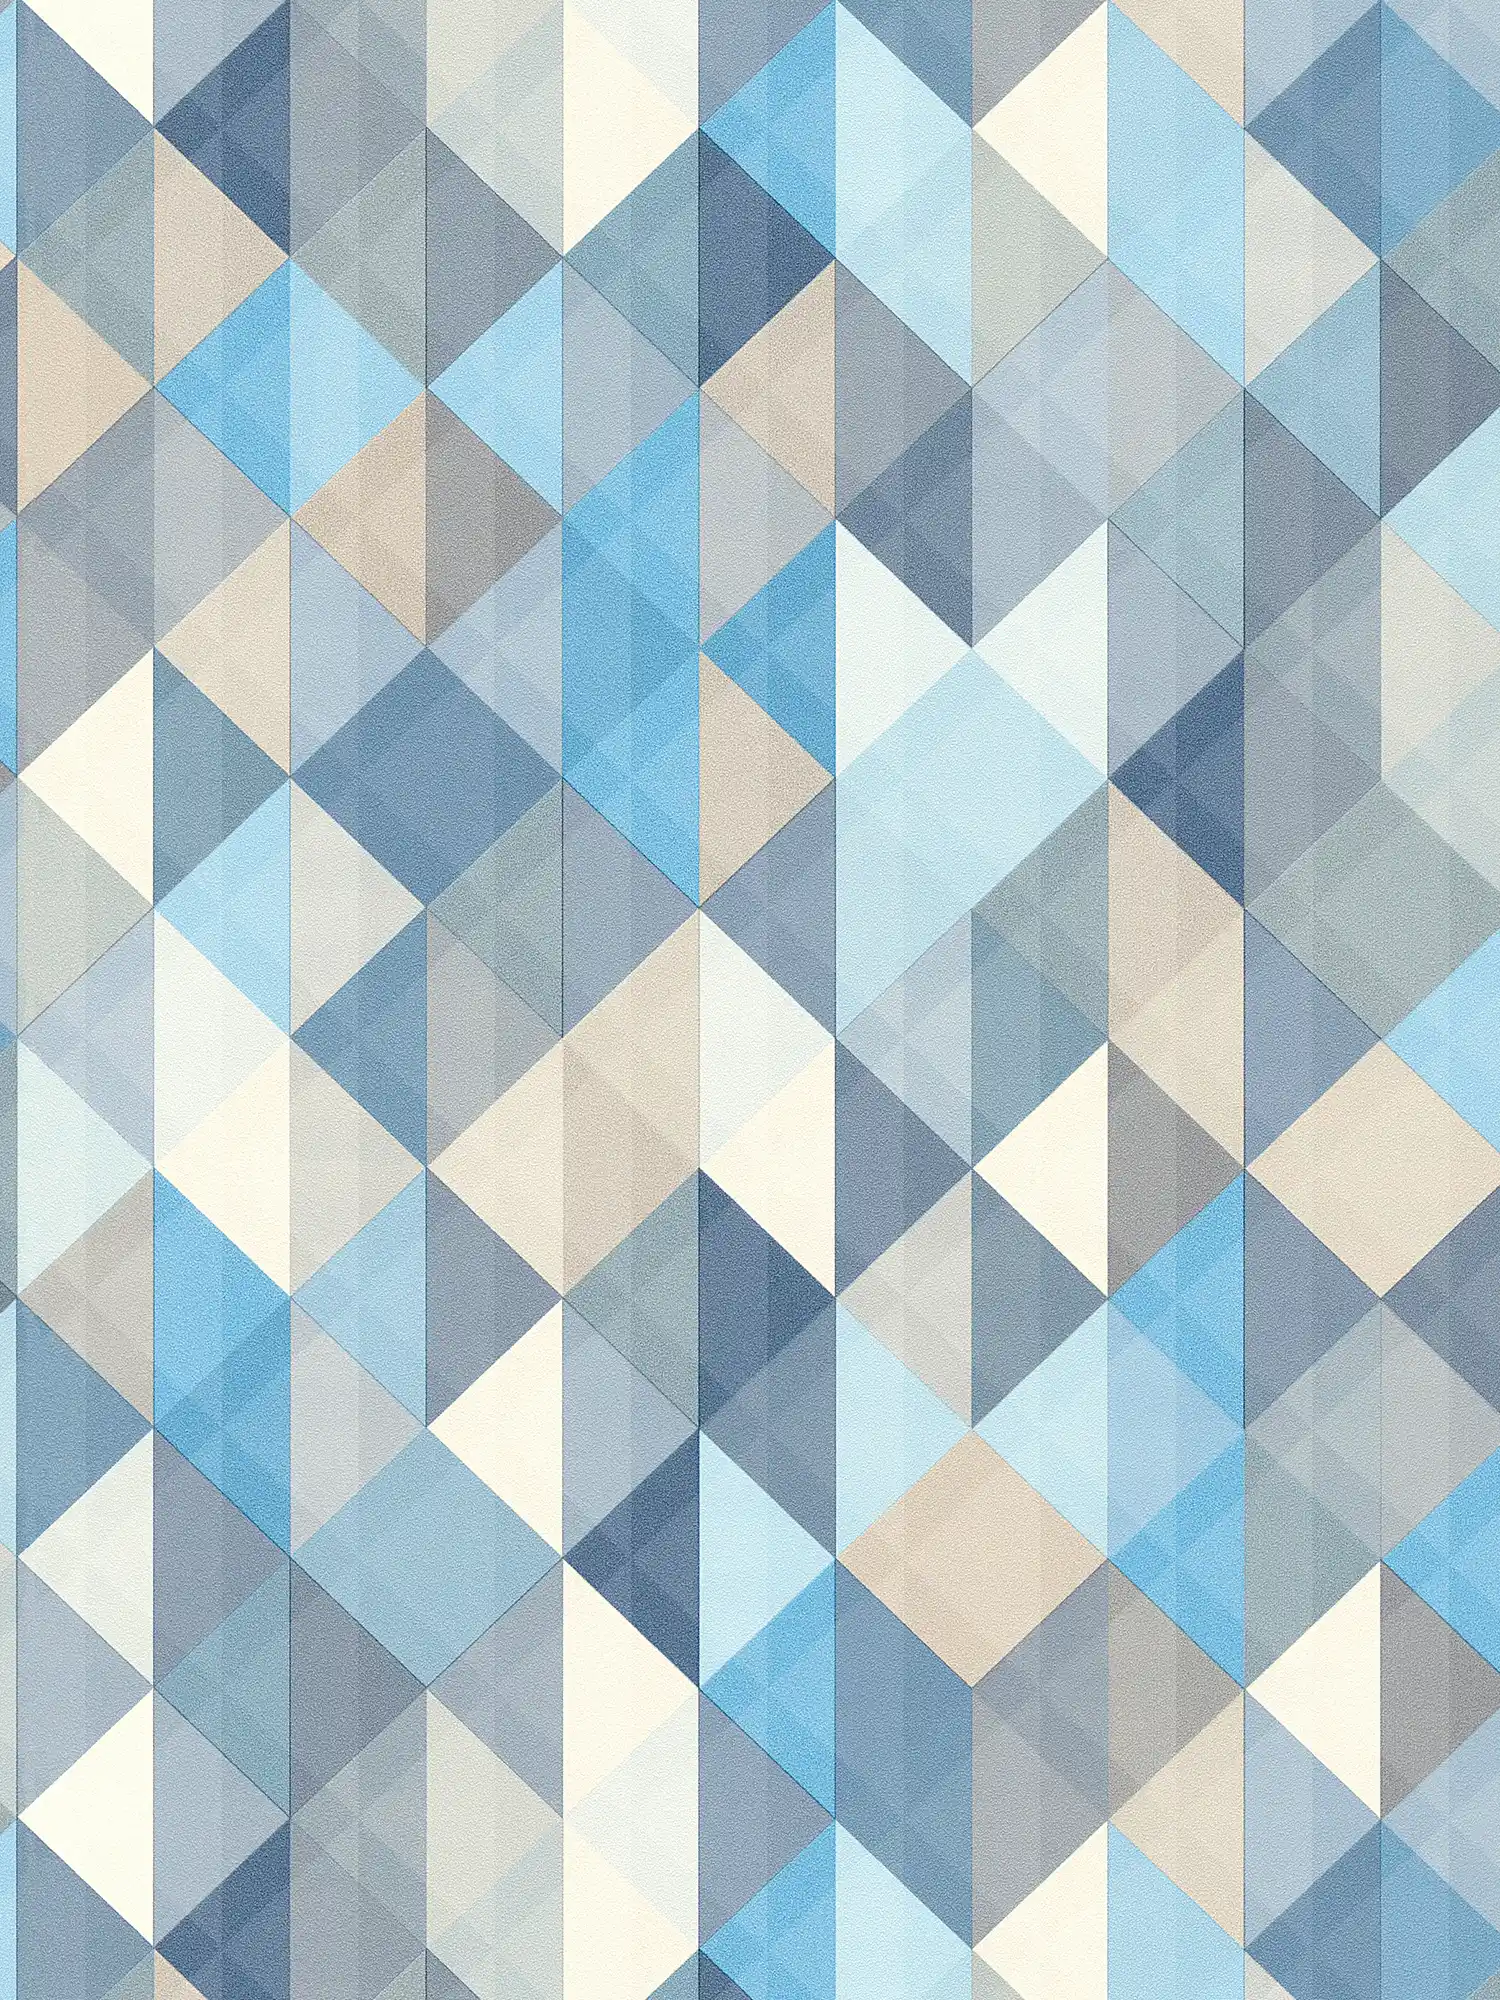 Scandinavian style wallpaper with geometric pattern - blue, grey, beige
